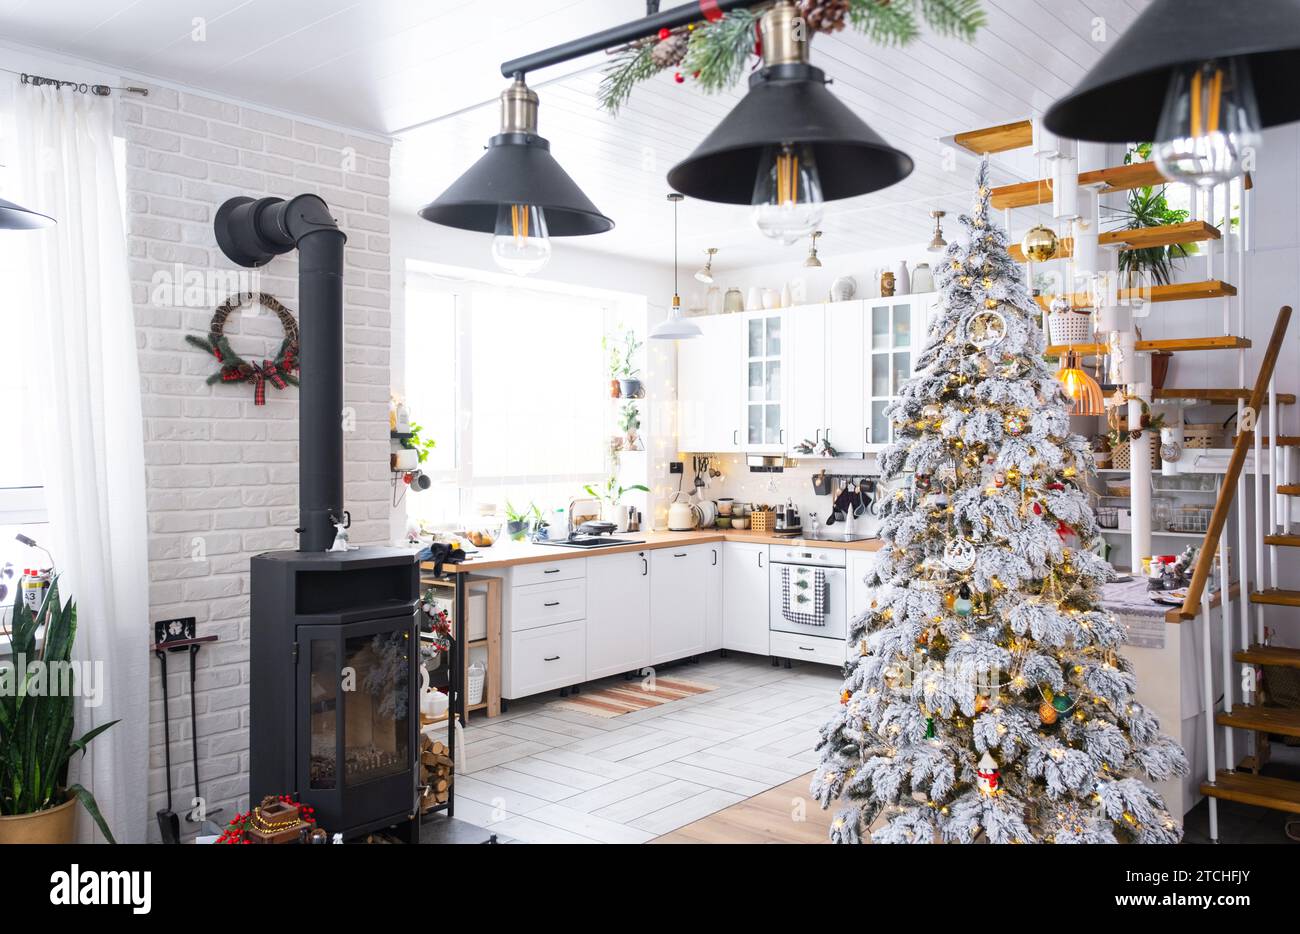 Decorazioni natalizie natalizie in cucina bianca, interni rustici moderni con un albero di Natale innevato e luci delle fate. Capodanno, atmosfera natalizia, casa accogliente. TH Foto Stock